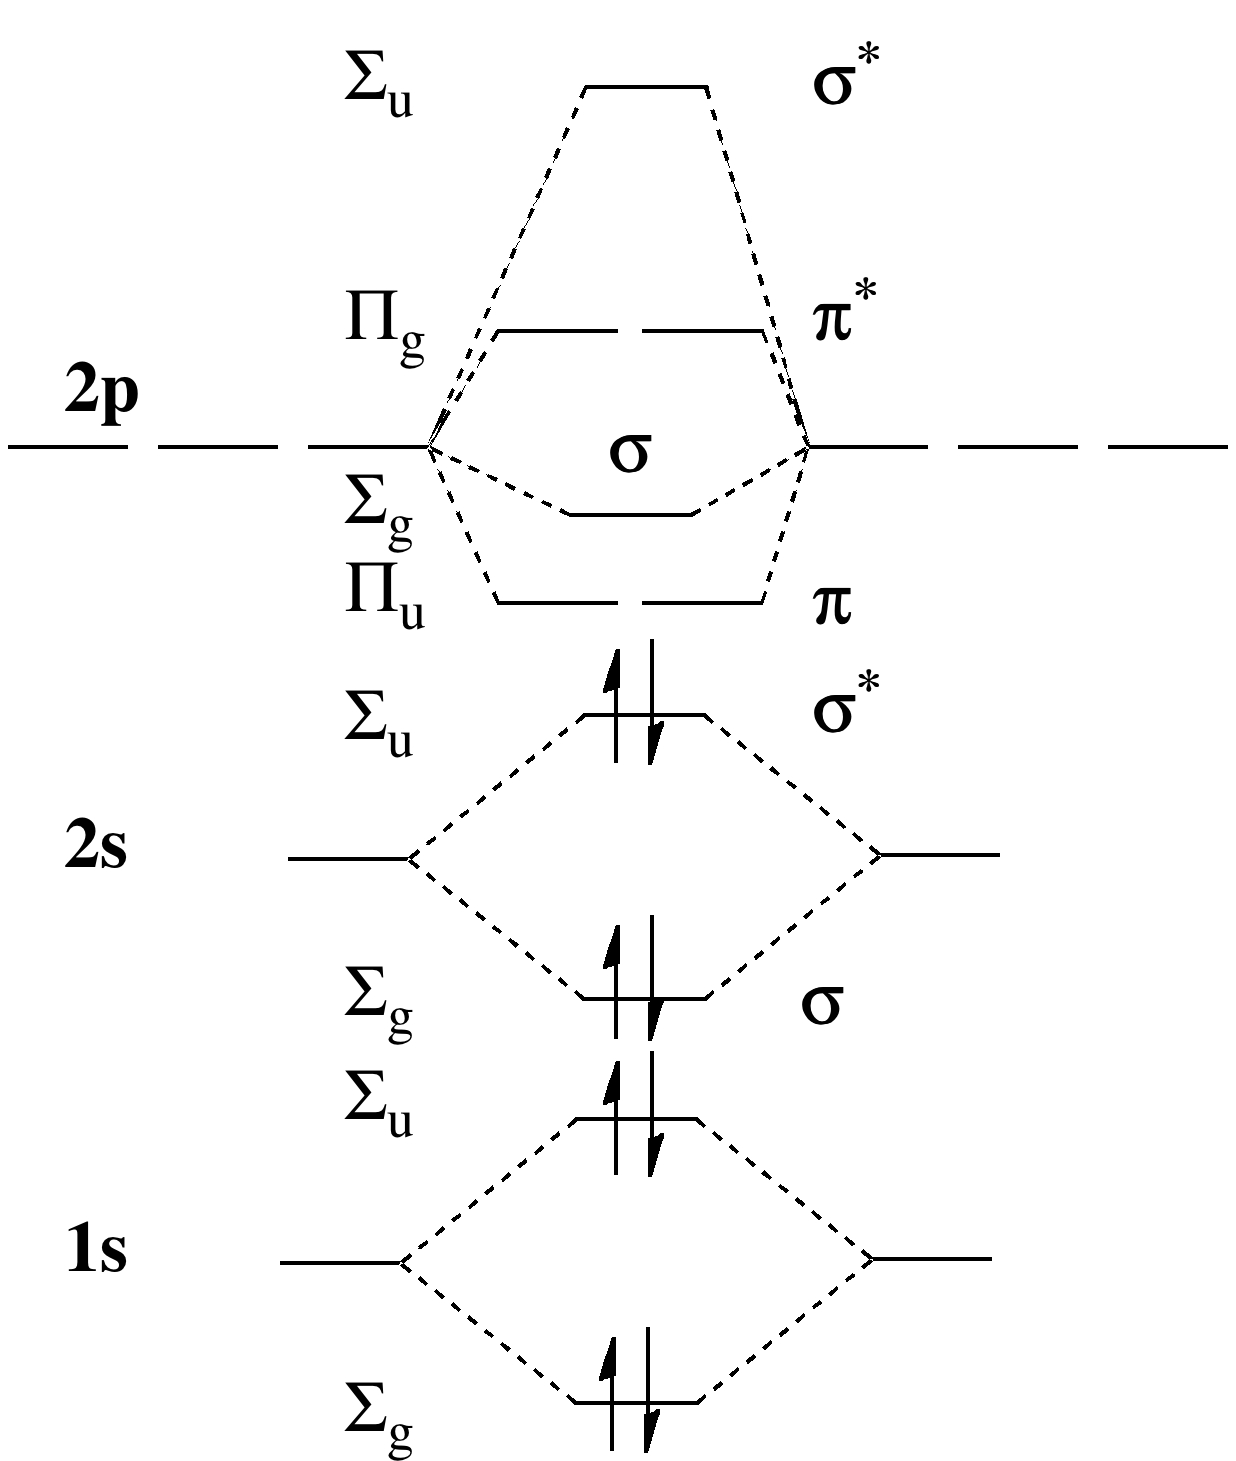 Be2 Molecular Orbital Diagram